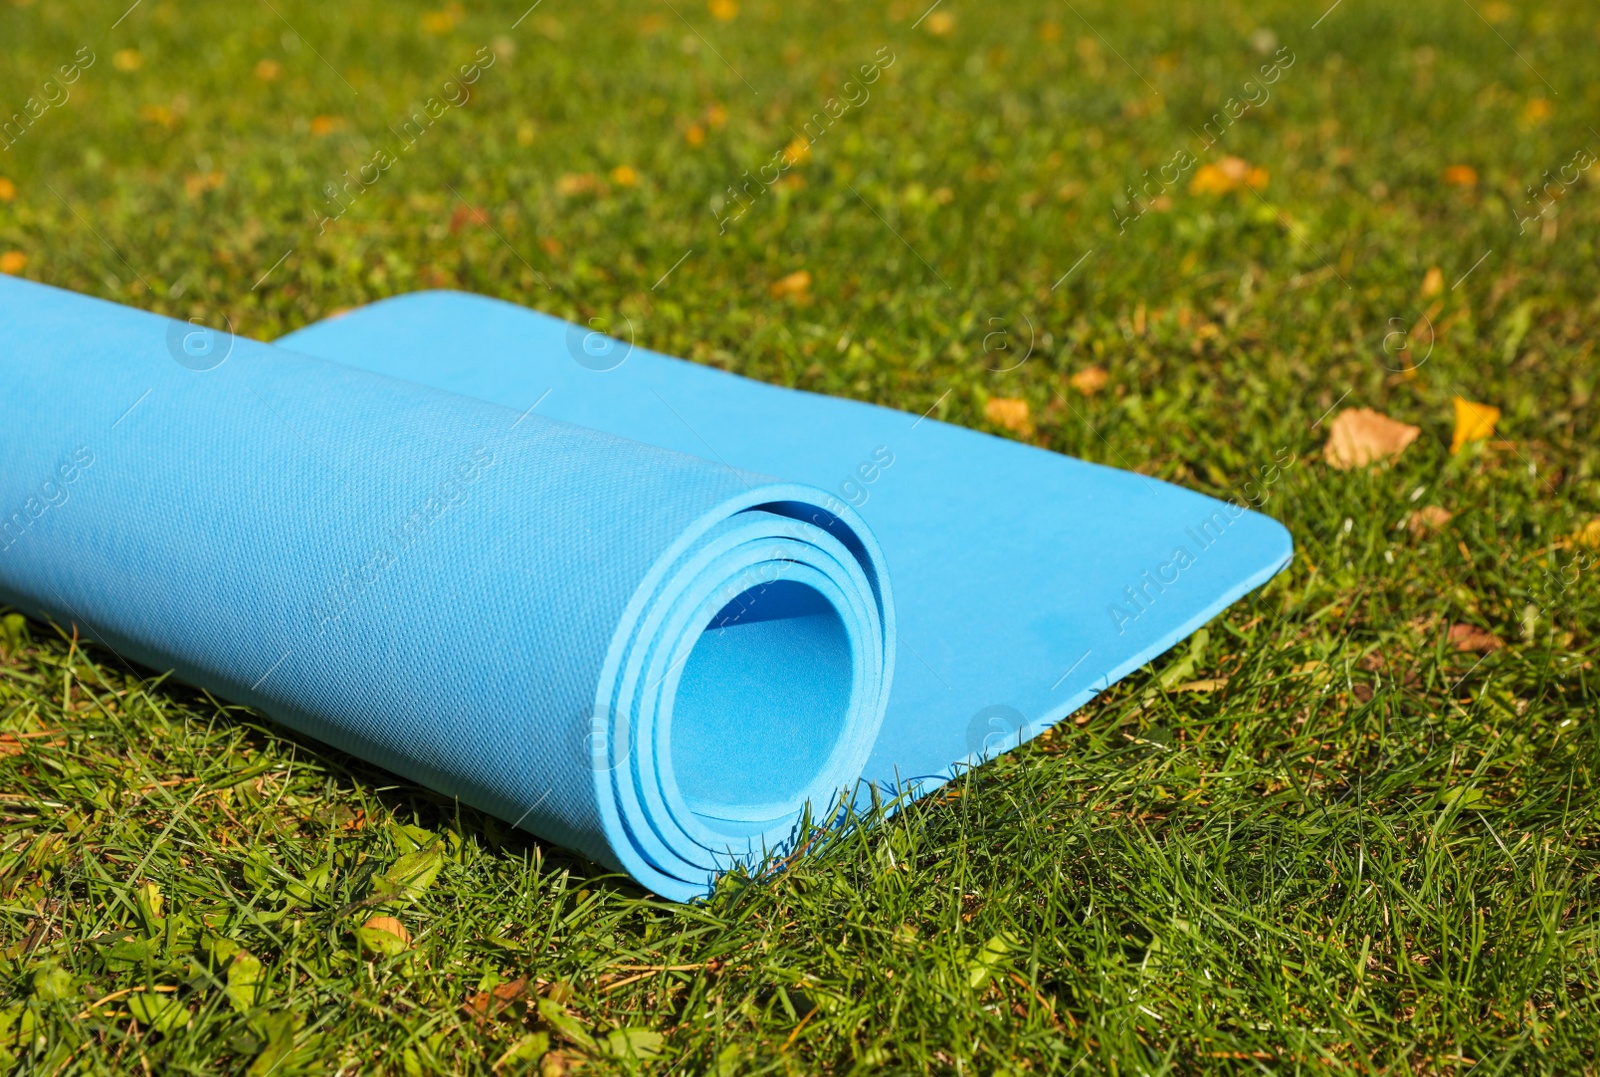 Photo of Blue karemat or fitness mat on fresh green grass outdoors, closeup